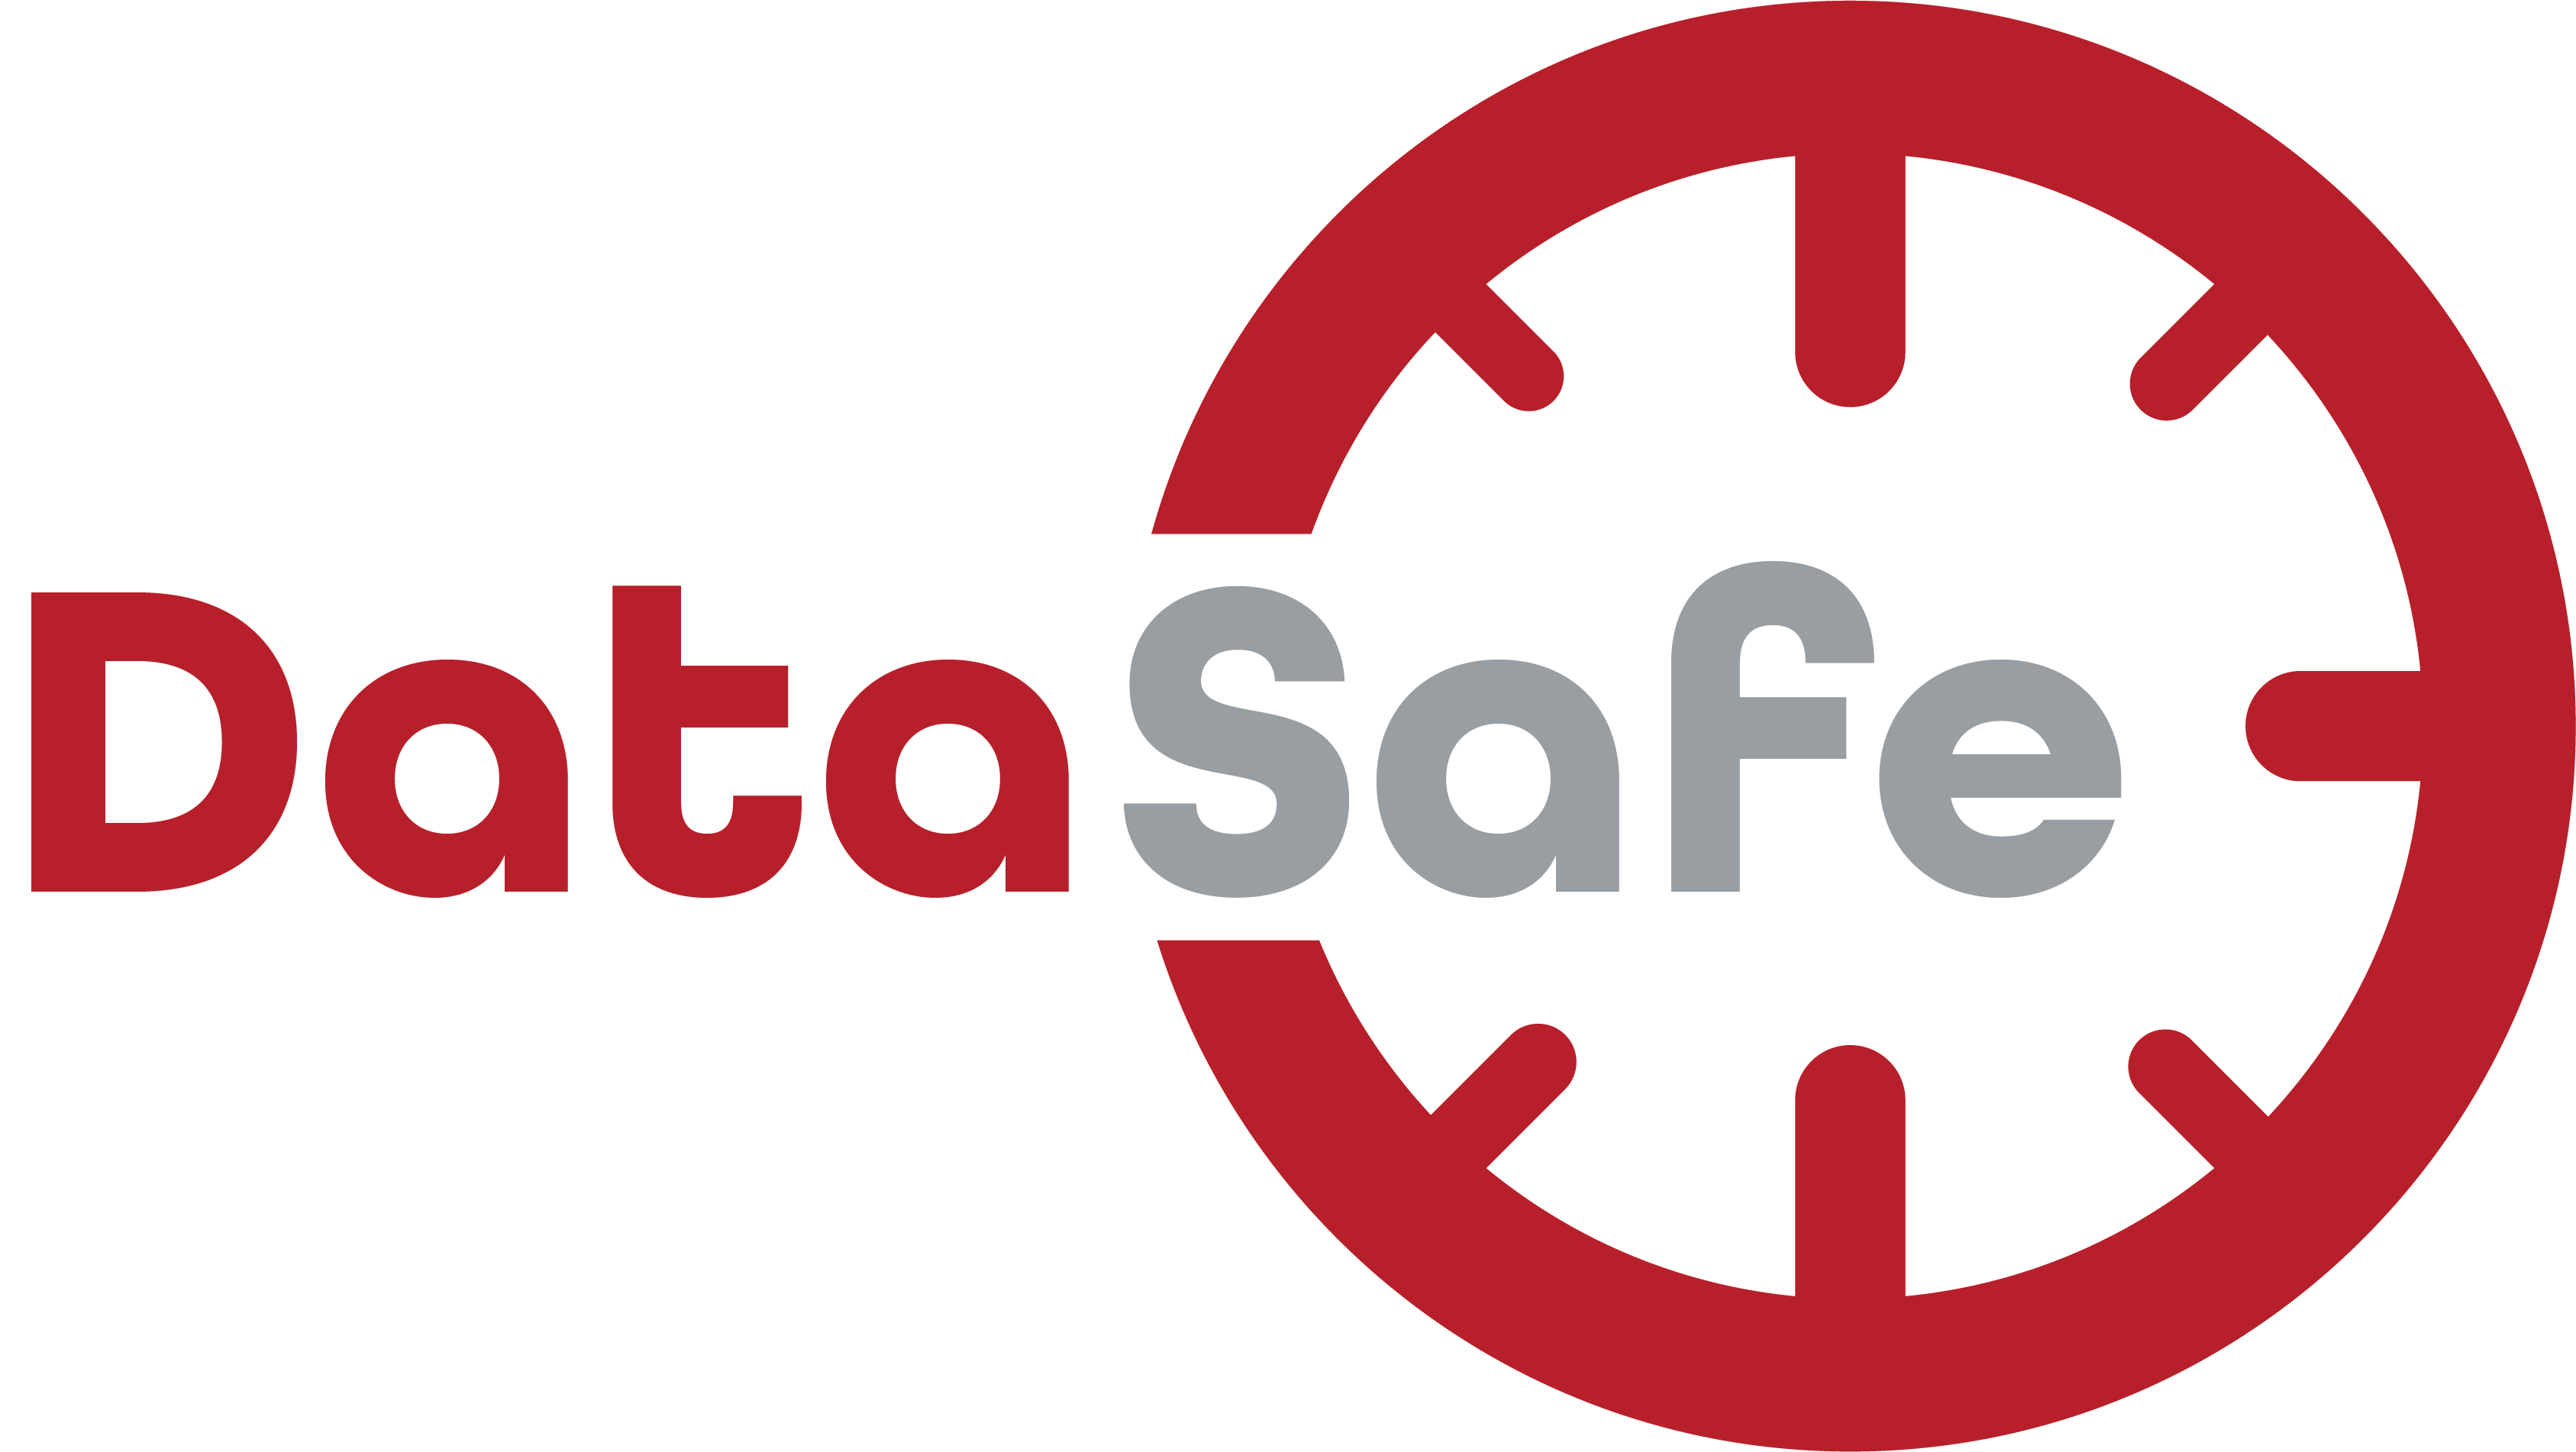 DataSafe logo